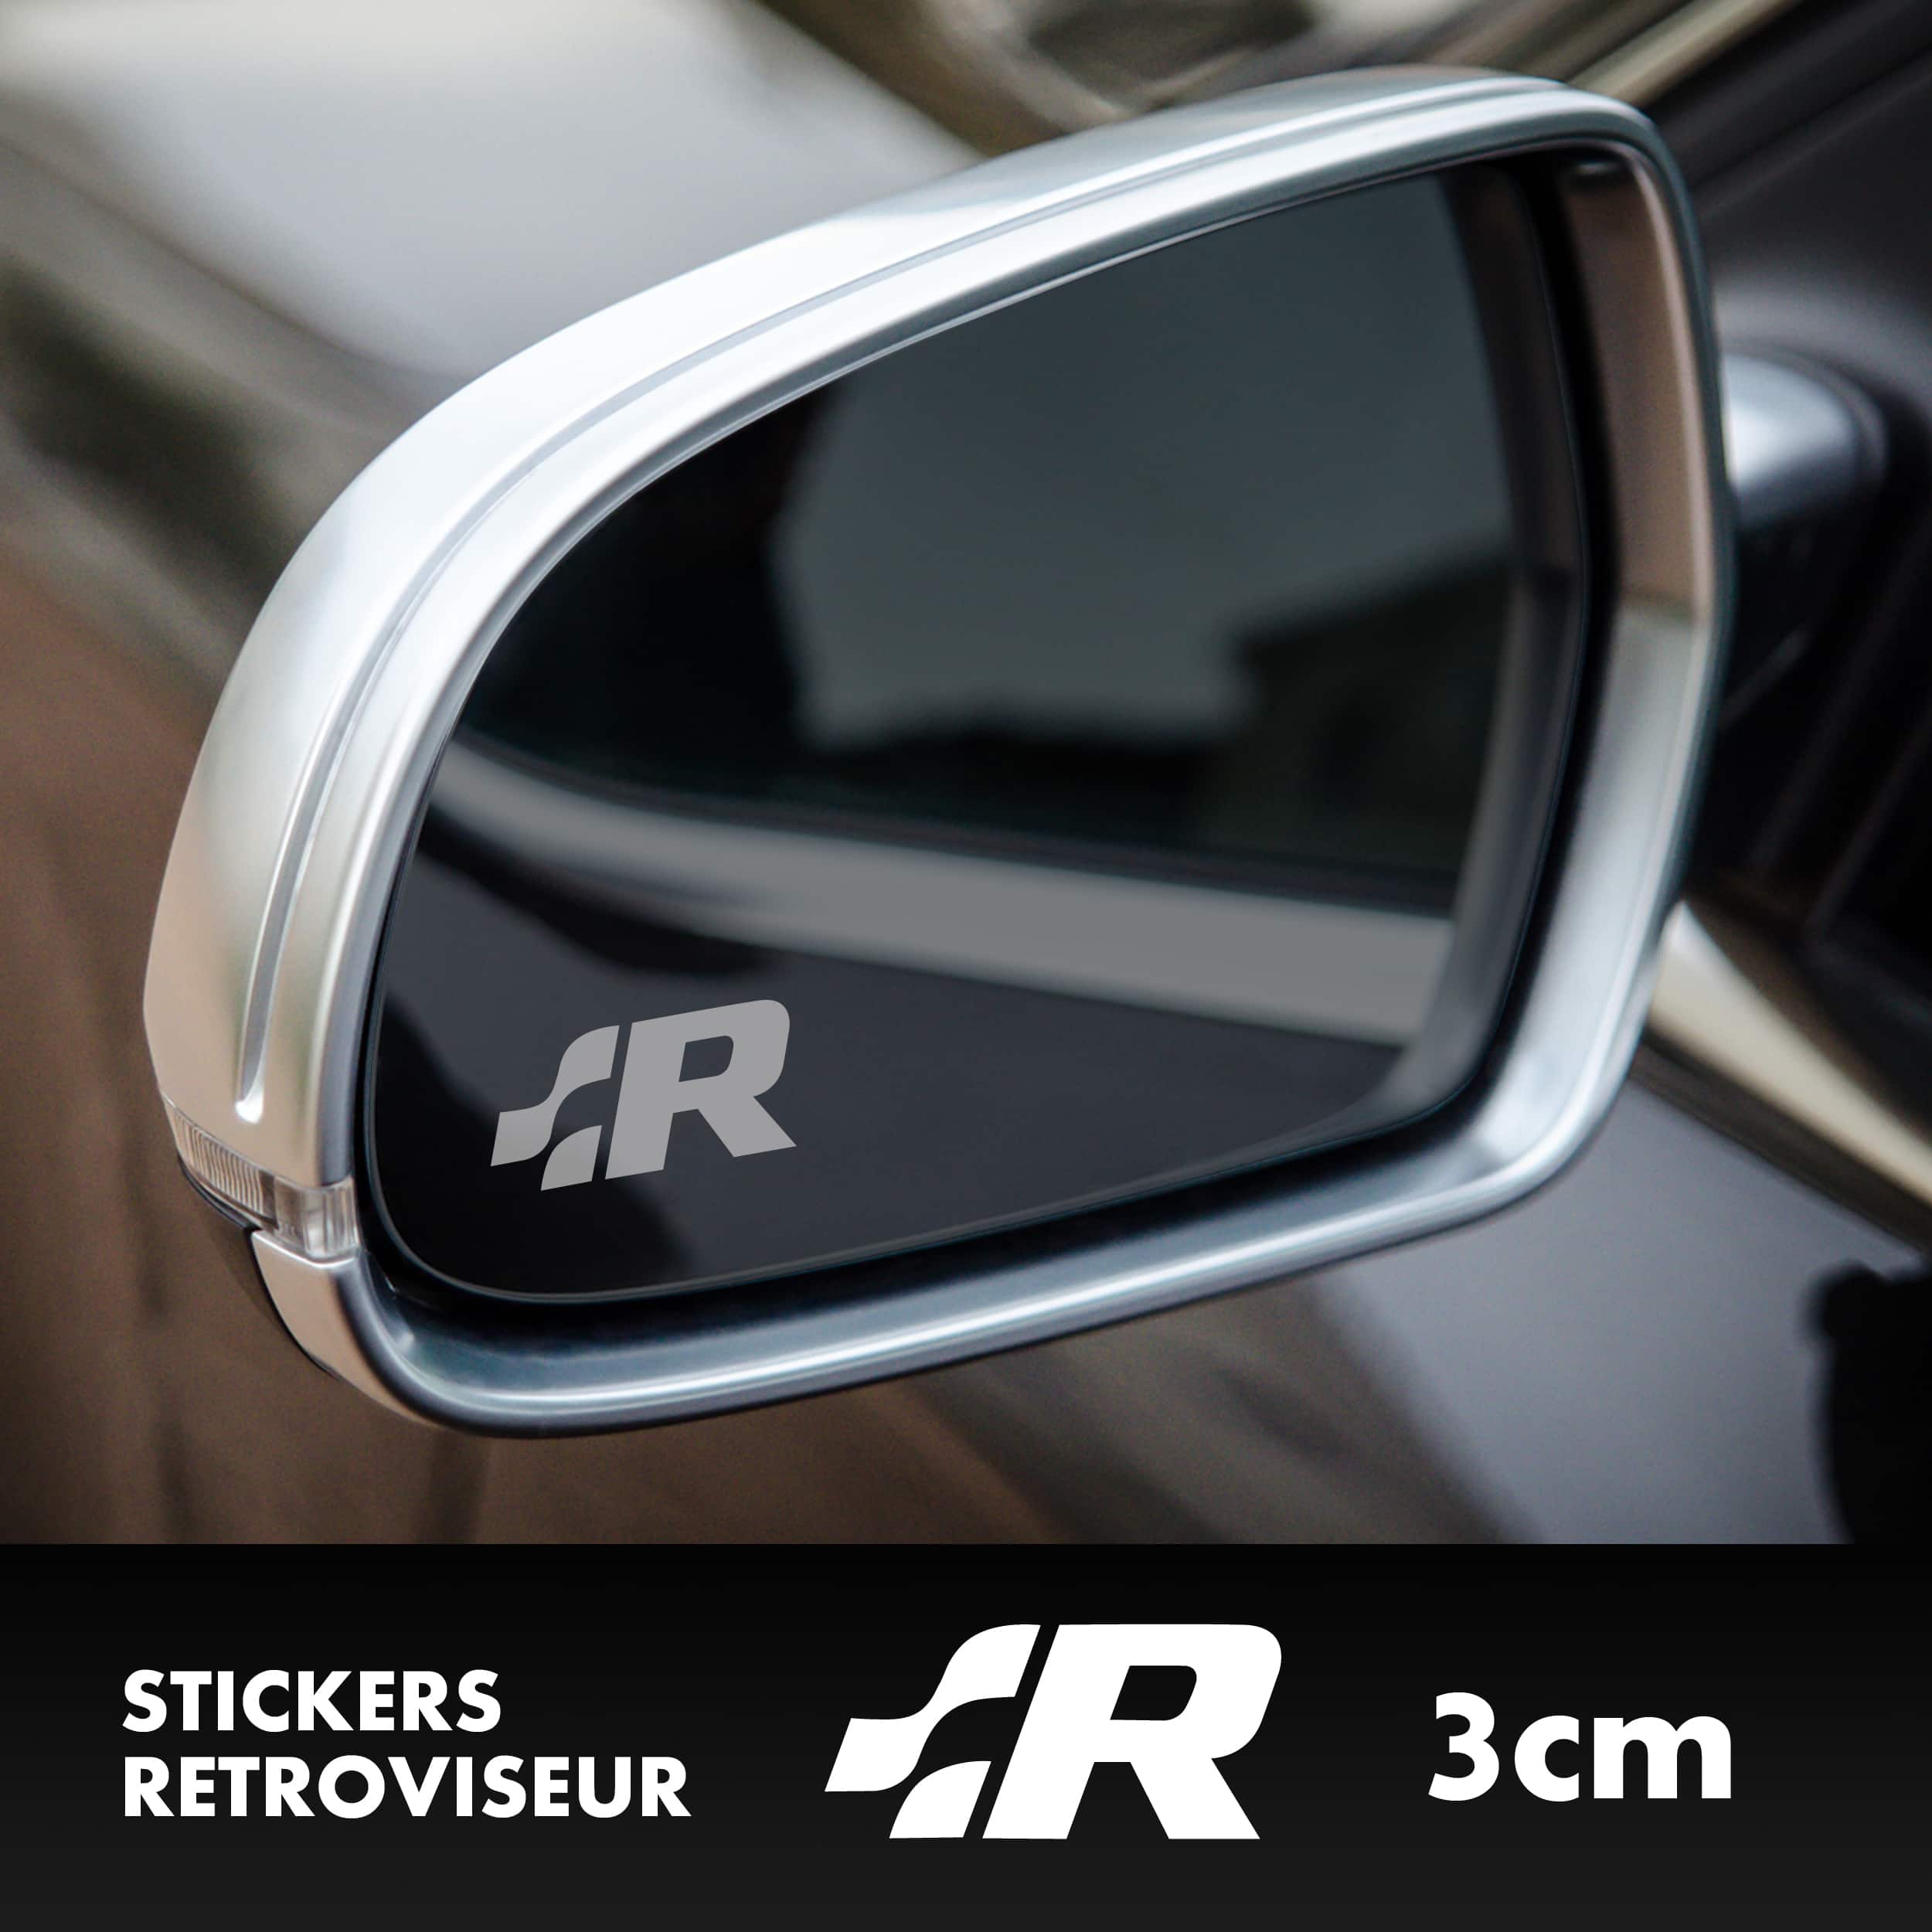 stickers-retroviseur-volkswagen-R-ref7-autocollant-sticker-voiture-auto-mirrors-decals-sponsors-tuning-rallye-min